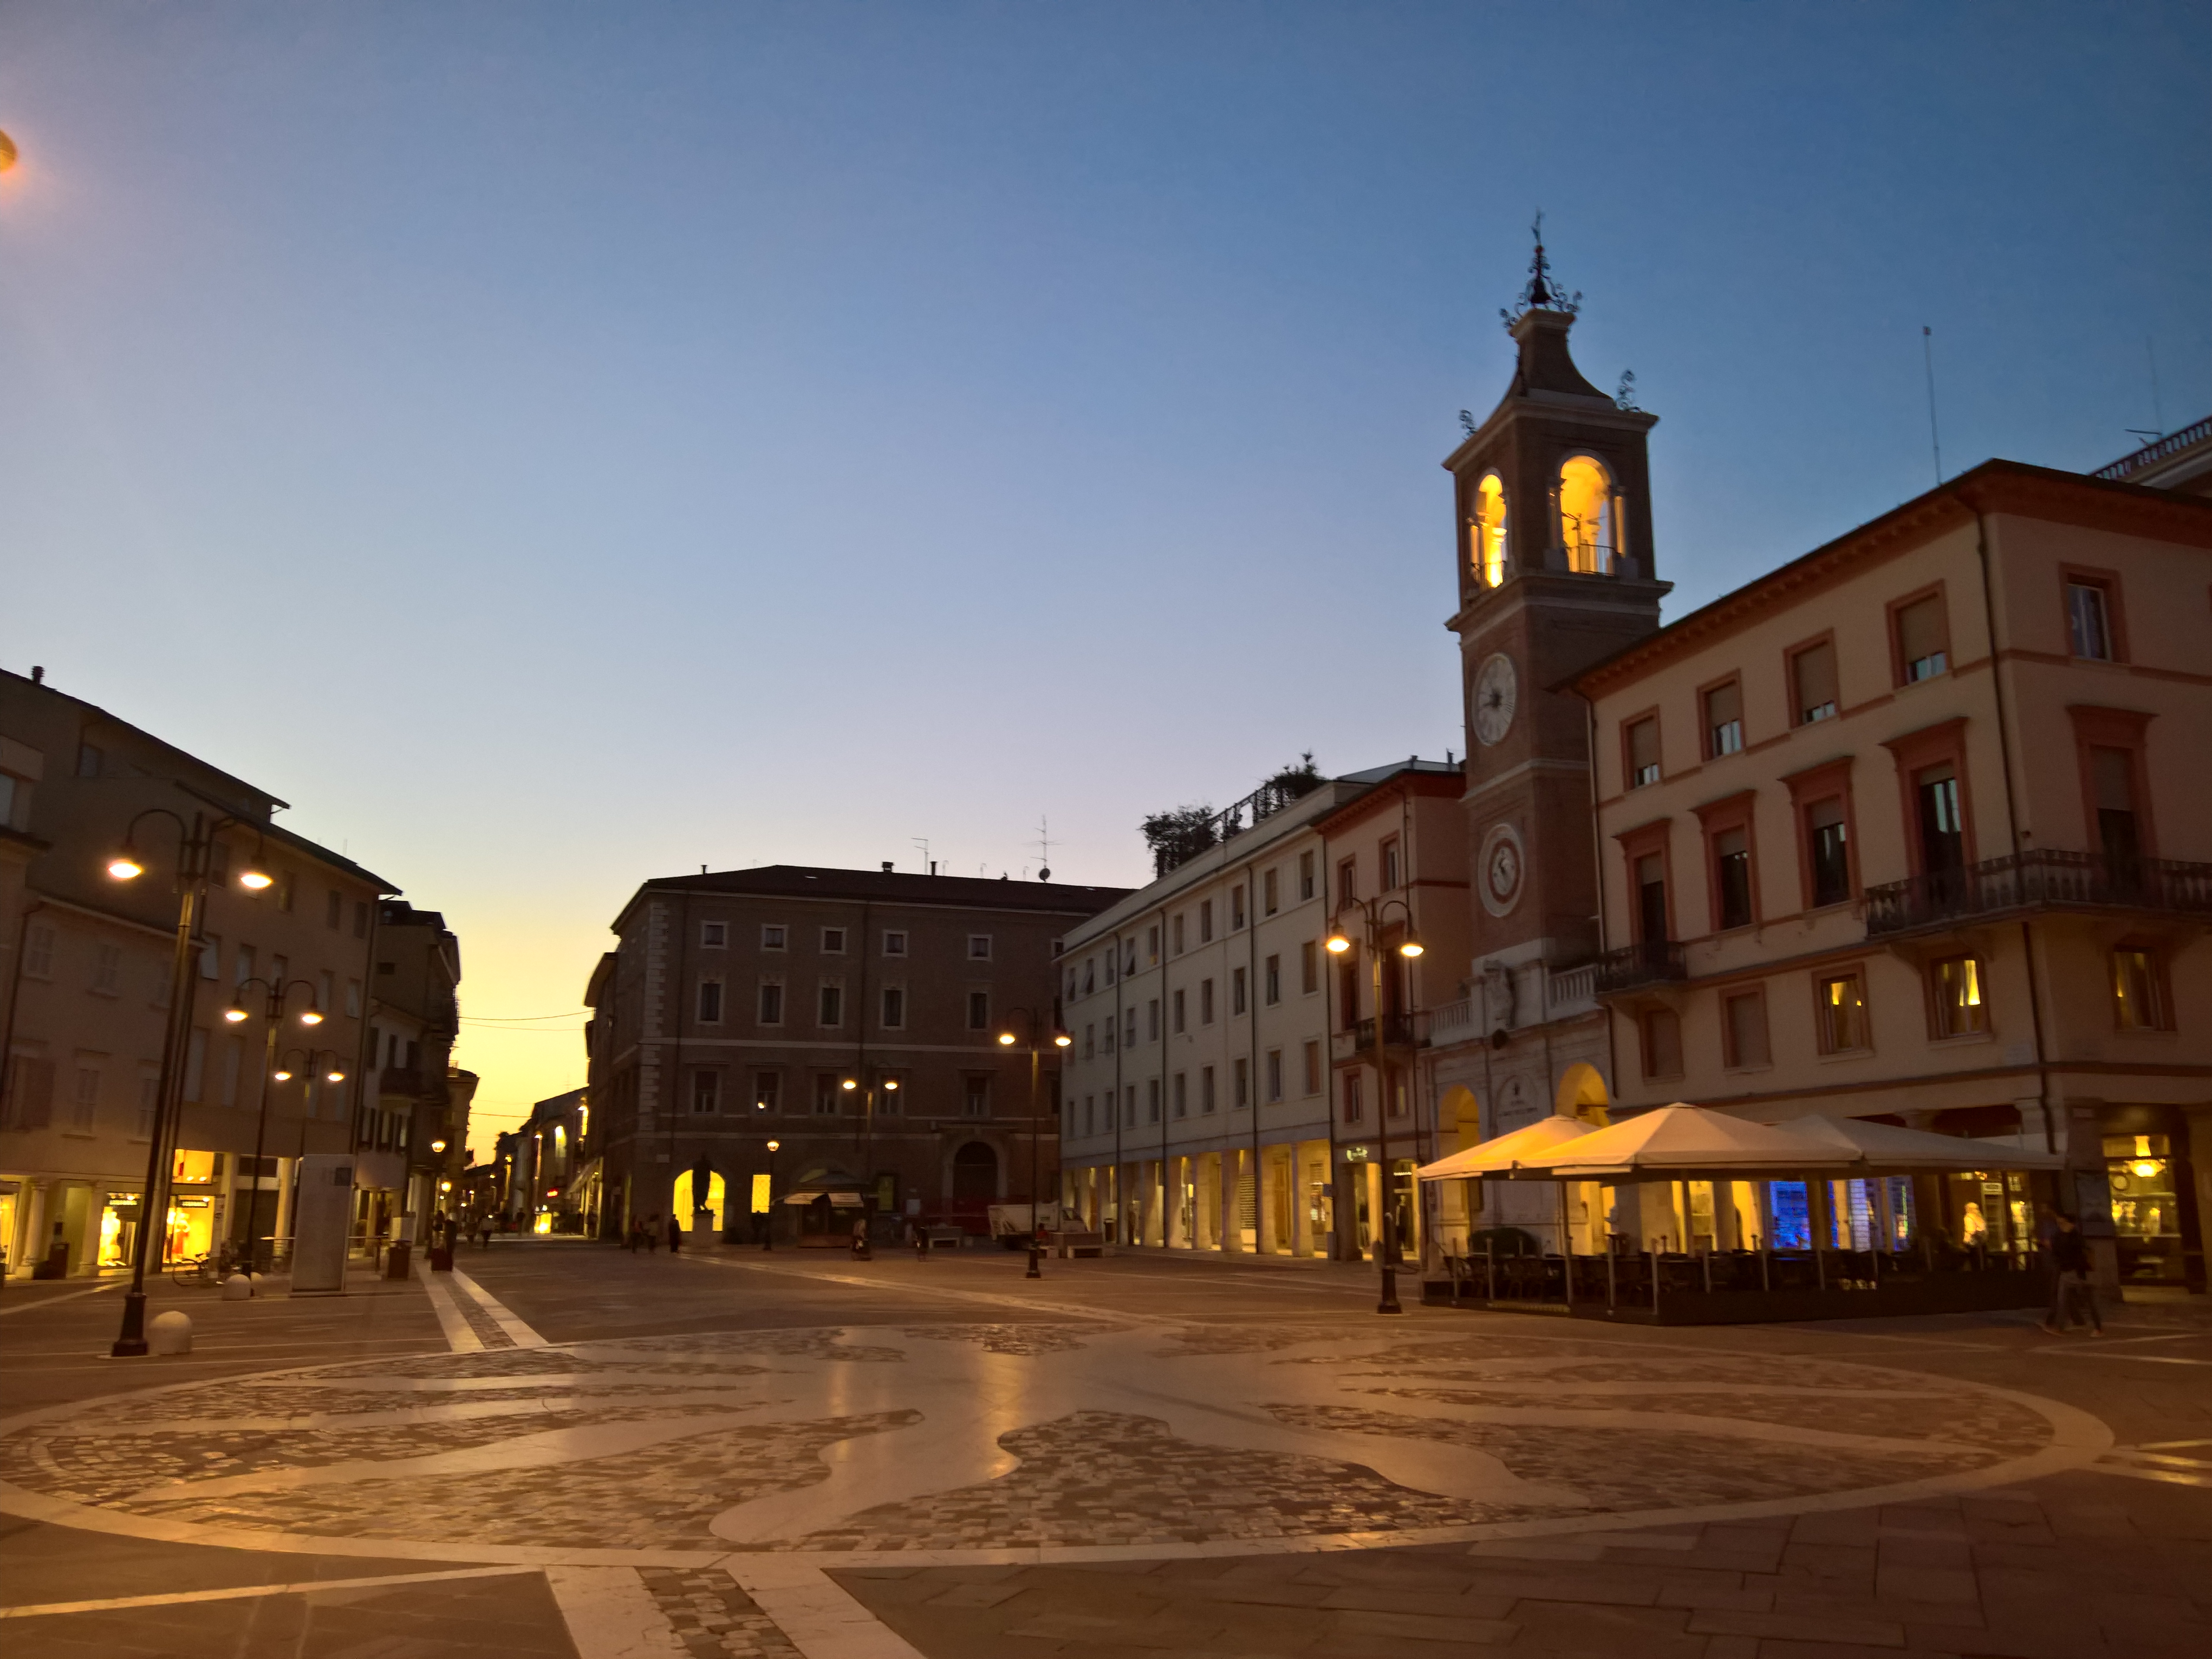 foto: https://upload.wikimedia.org/wikipedia/commons/d/d6/Rimini%2C_Piazza_Tre_Martiri_al_tramonto.jpg